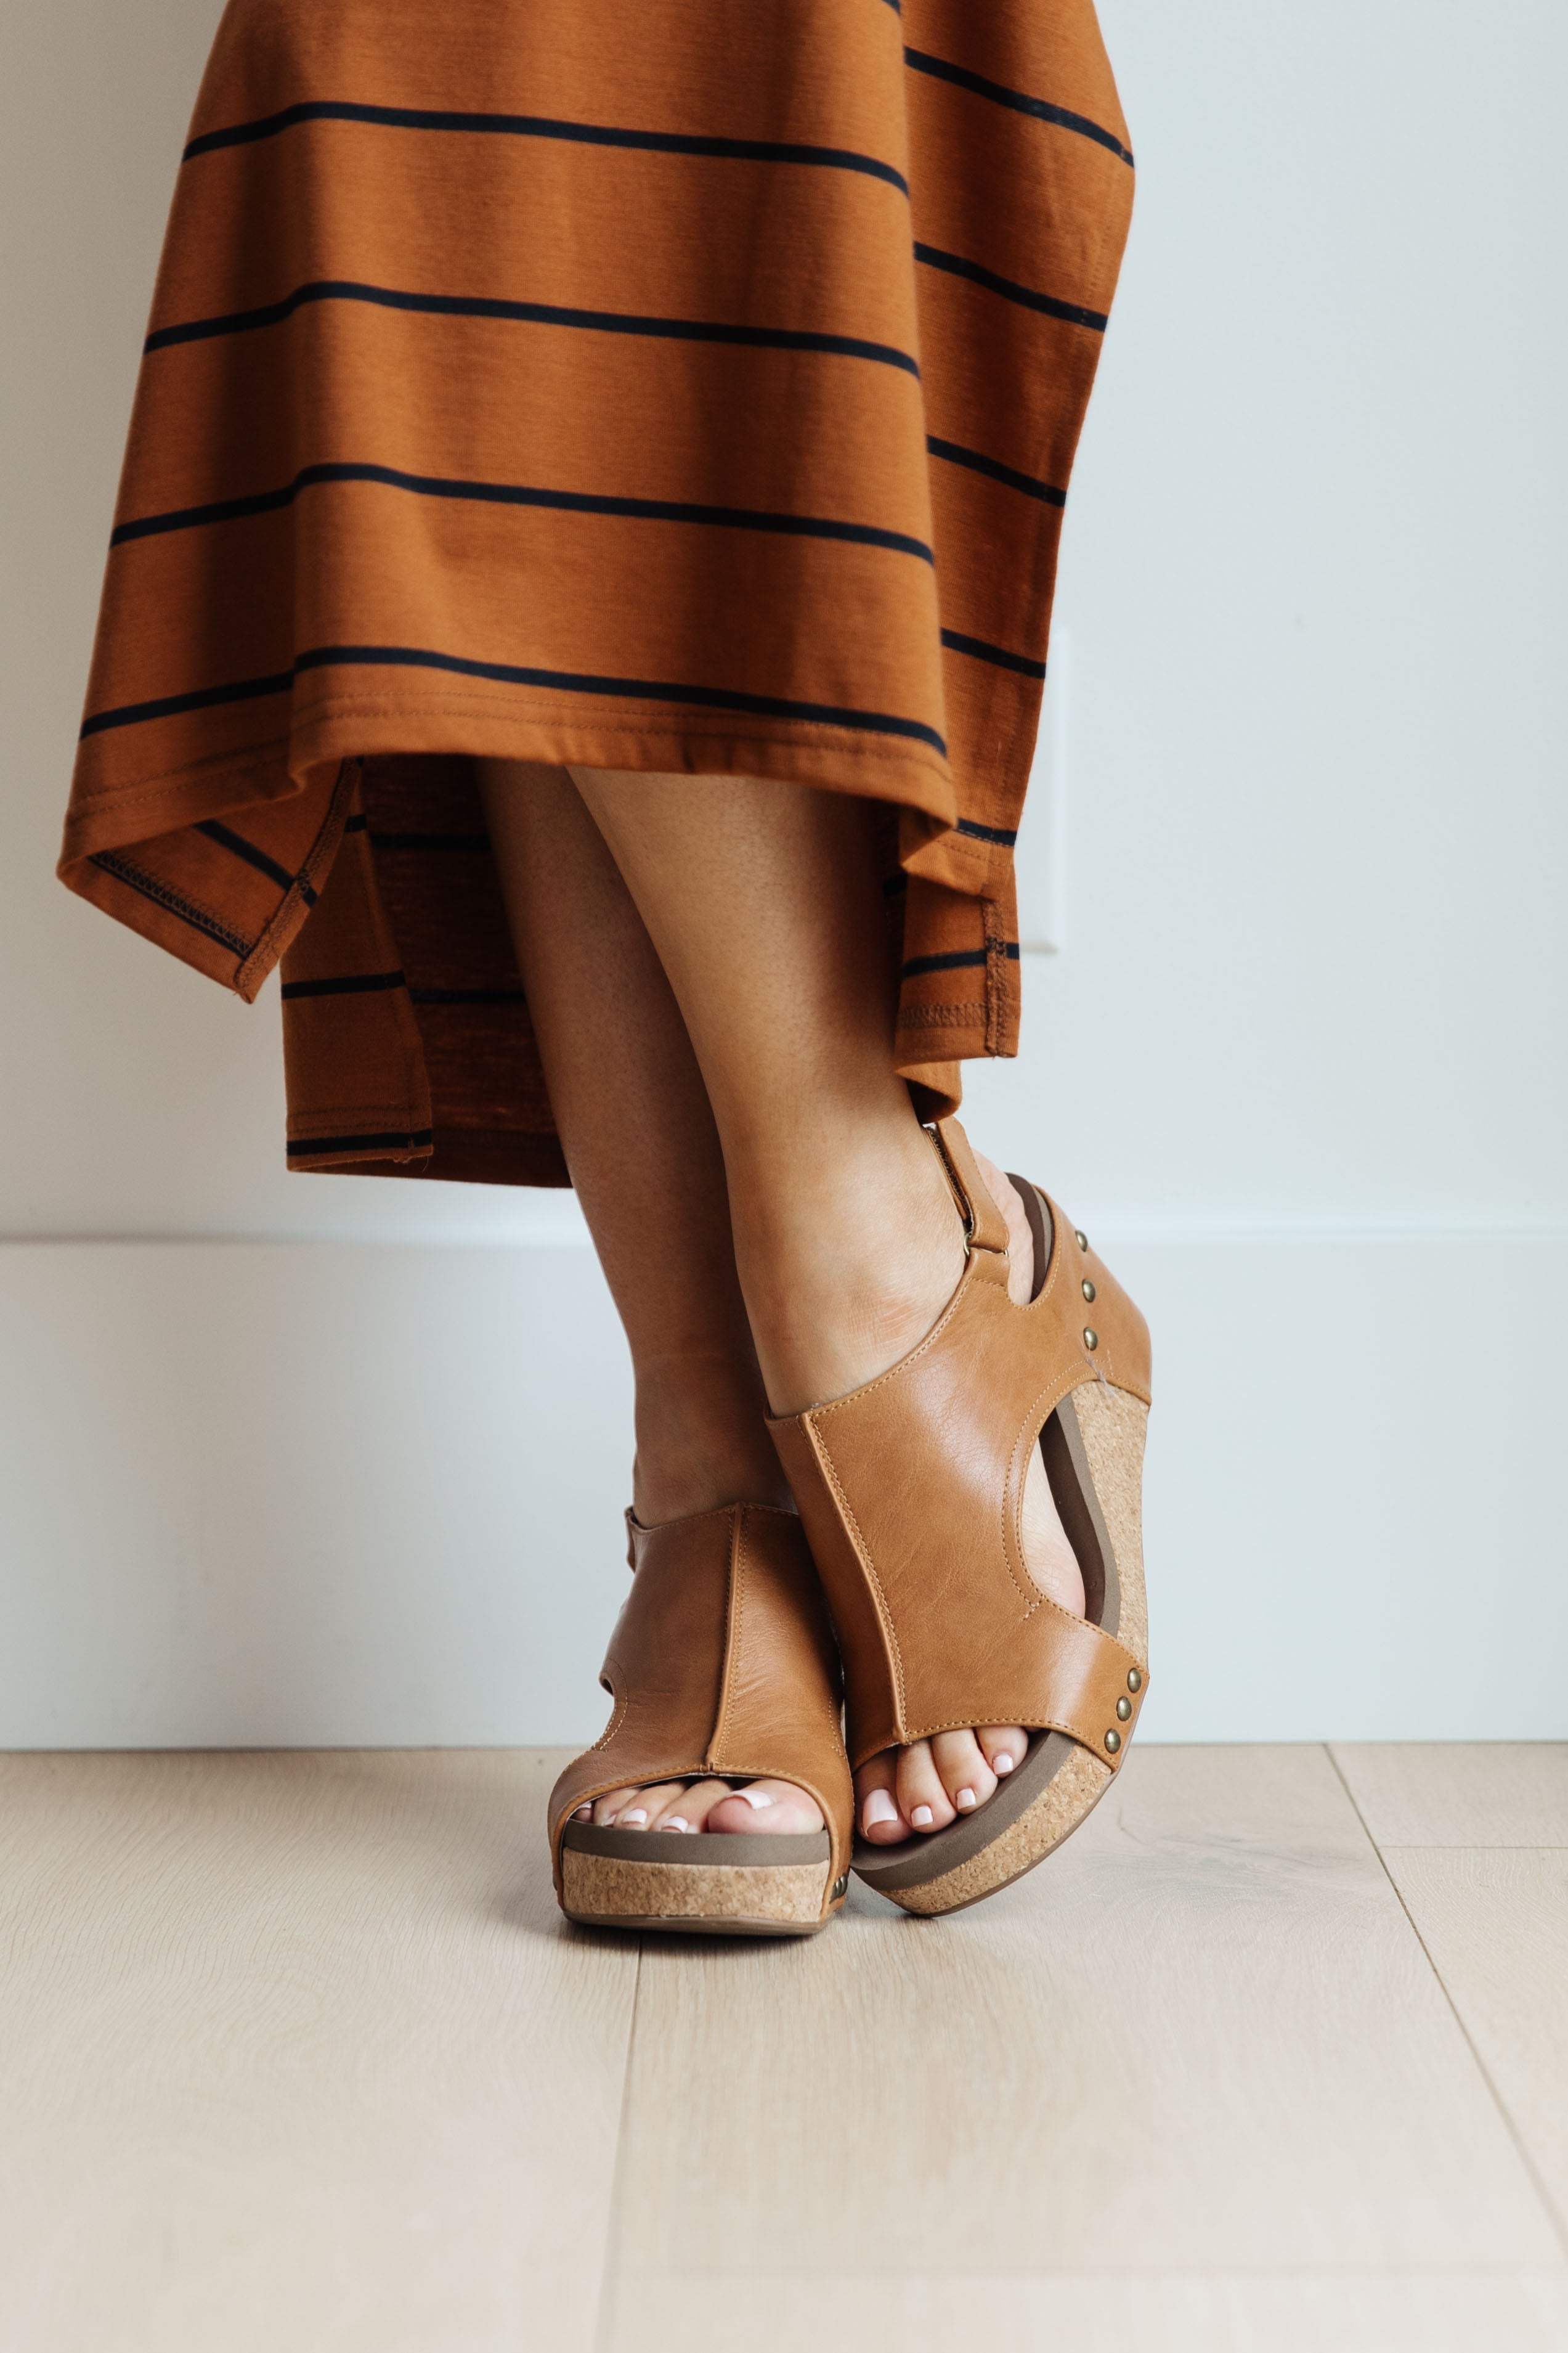 Walk This Way Wedge Sandals in Cognac - WEBSITE EXCLUSIVE